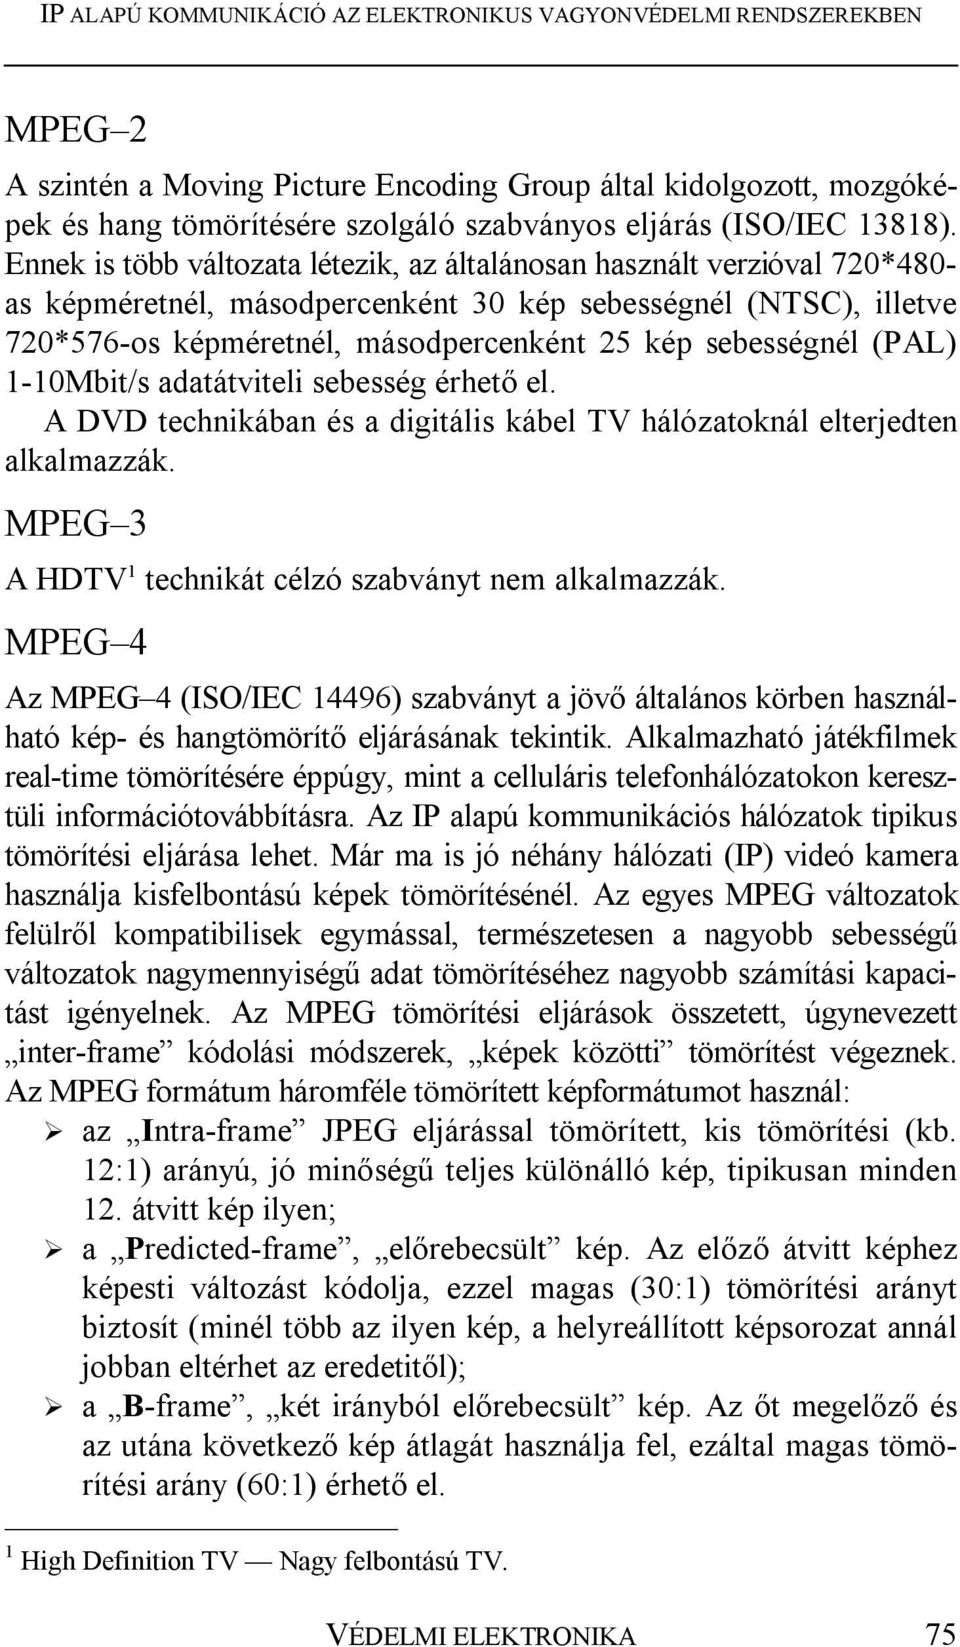 sebességnél (PAL) 1-10Mbit/s adatátviteli sebesség érhető el. A DVD technikában és a digitális kábel TV hálózatoknál elterjedten alkalmazzák. MPEG 3 A HDTV 1 technikát célzó szabványt nem alkalmazzák.